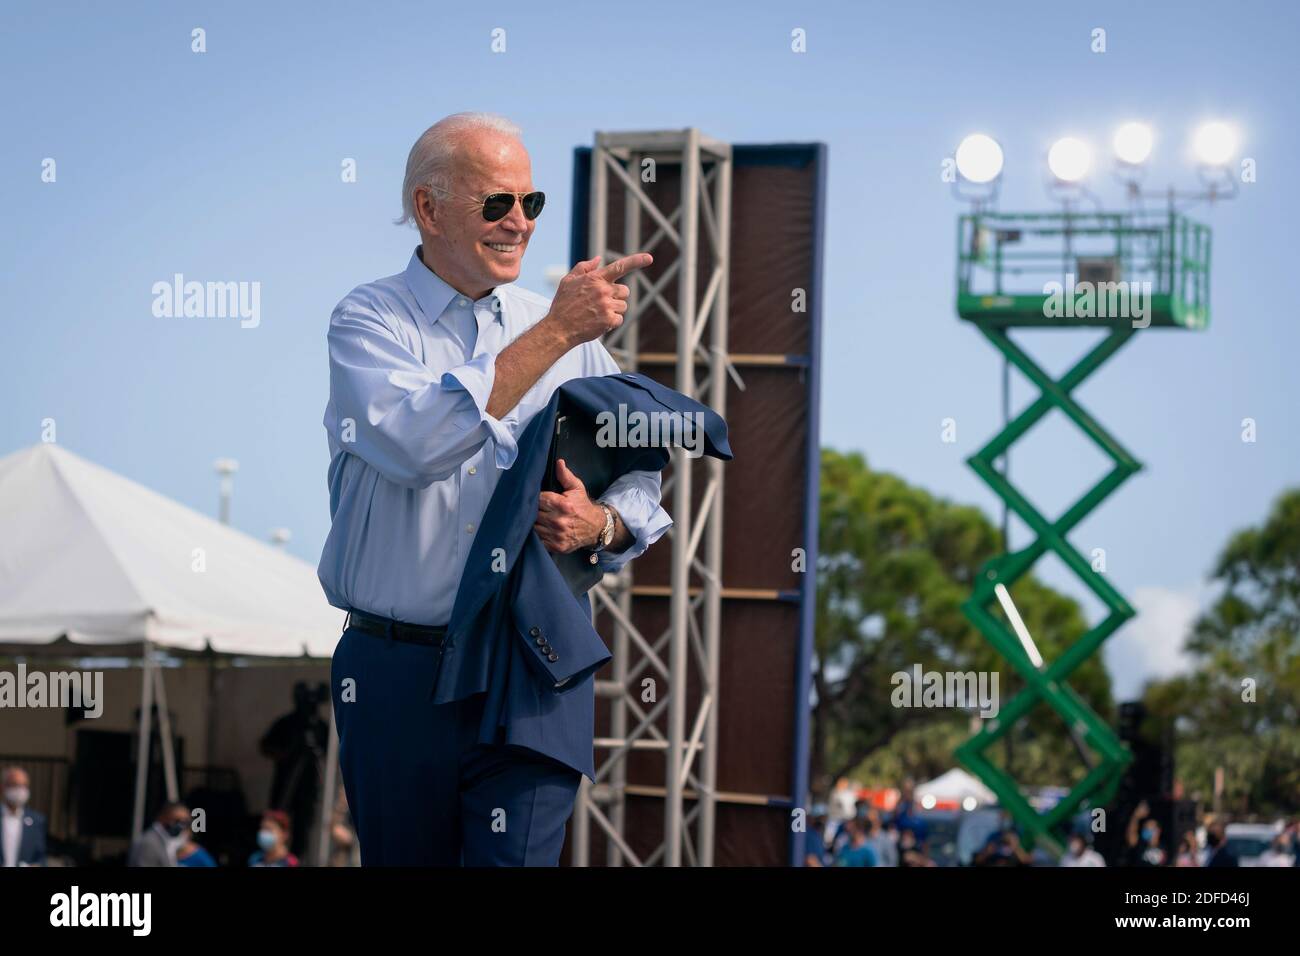 COCONUT CREEK, Floride, États-Unis - 29 octobre 2020 - Joe Biden, candidat démocrate à la présidence américaine, lors d'un rassemblement drive-in au Broward College - Coconut Creek, Flor Banque D'Images